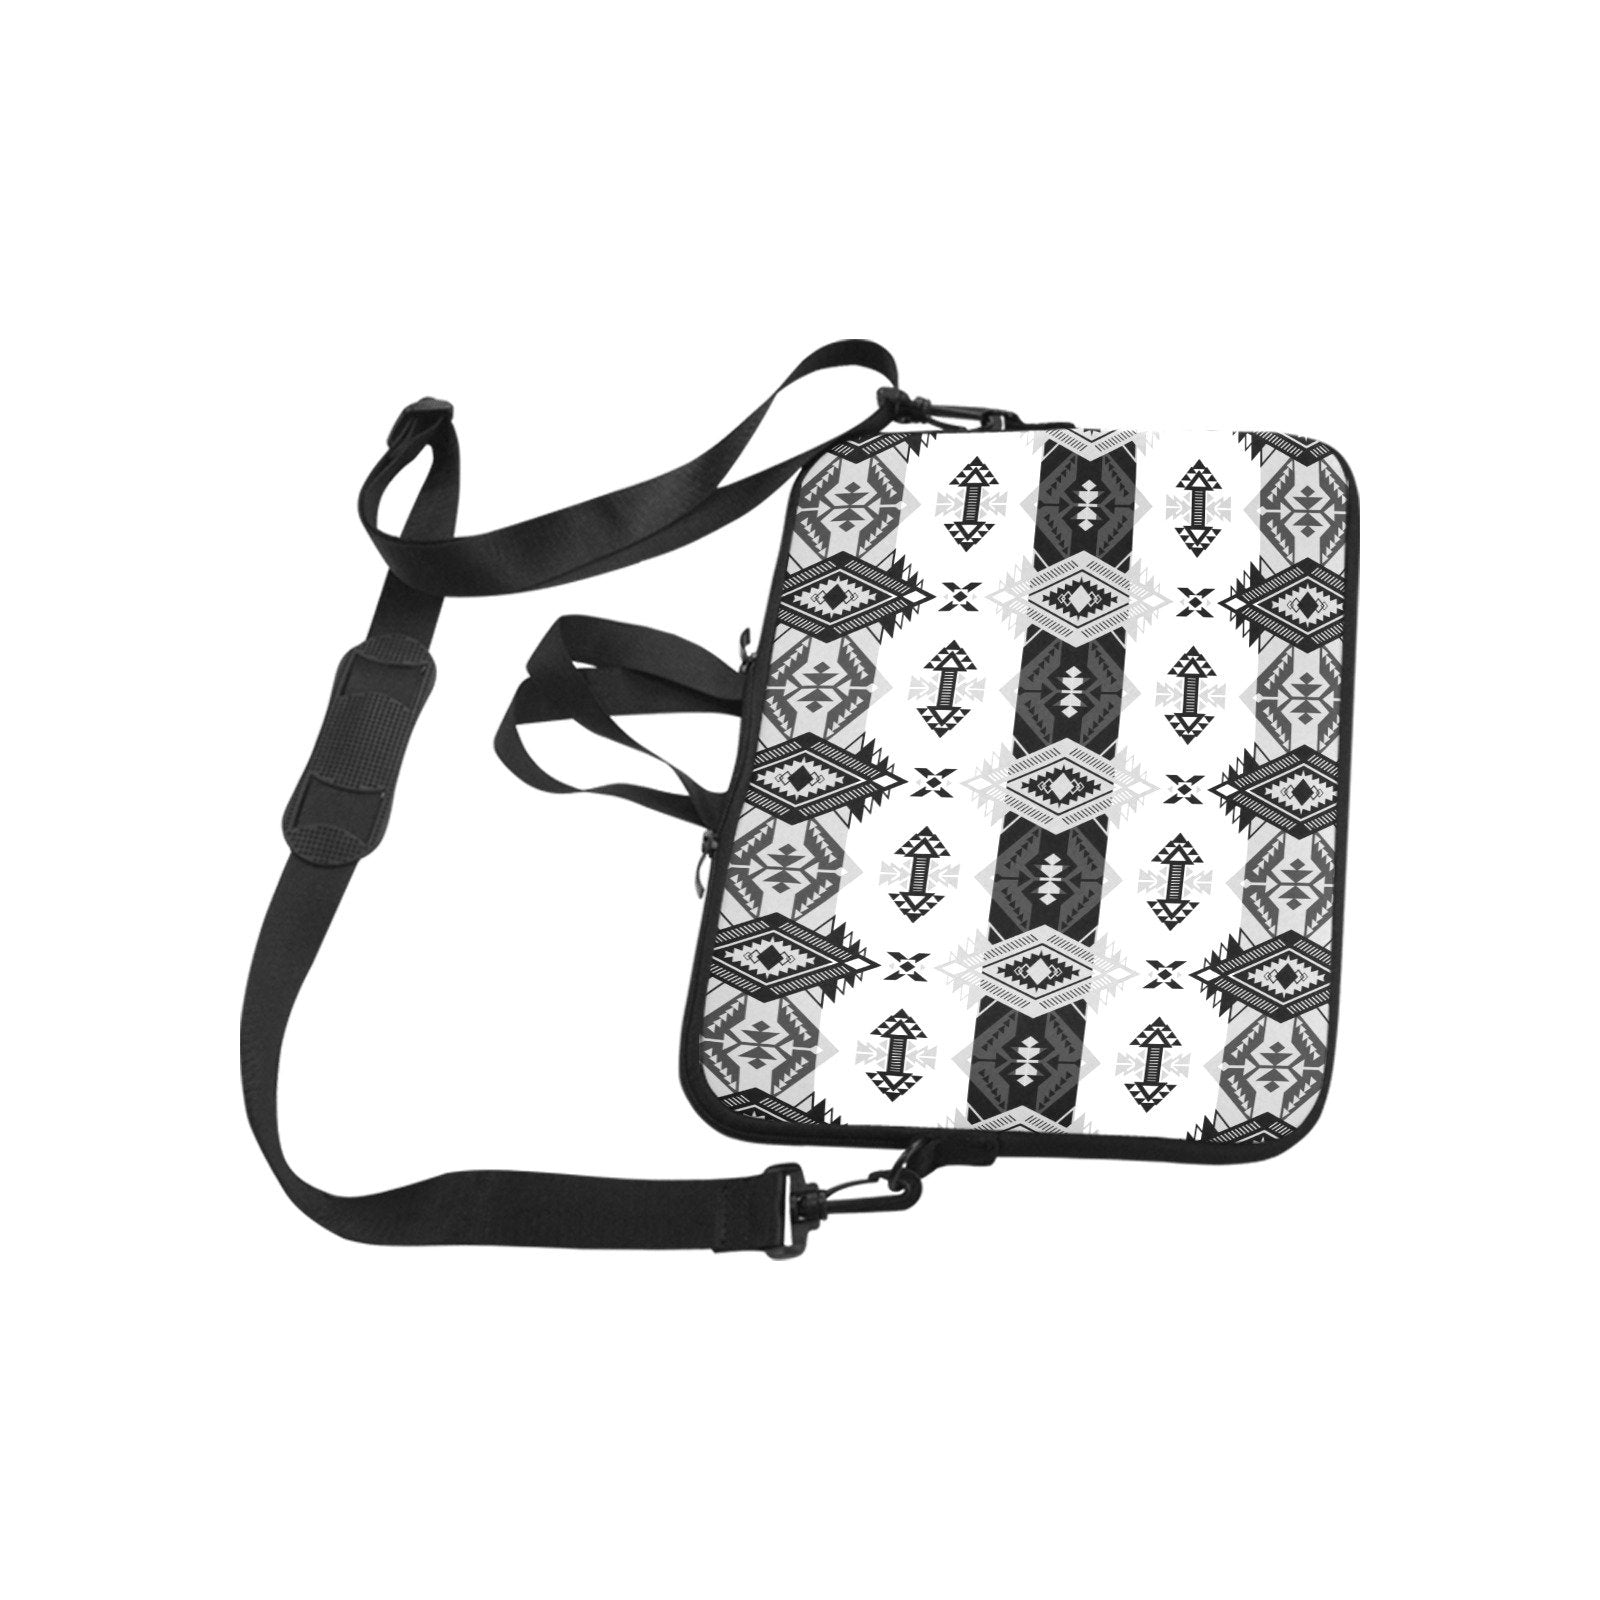 Sovereign Nation Black and White Laptop Handbags 13" Laptop Handbags 13" e-joyer 